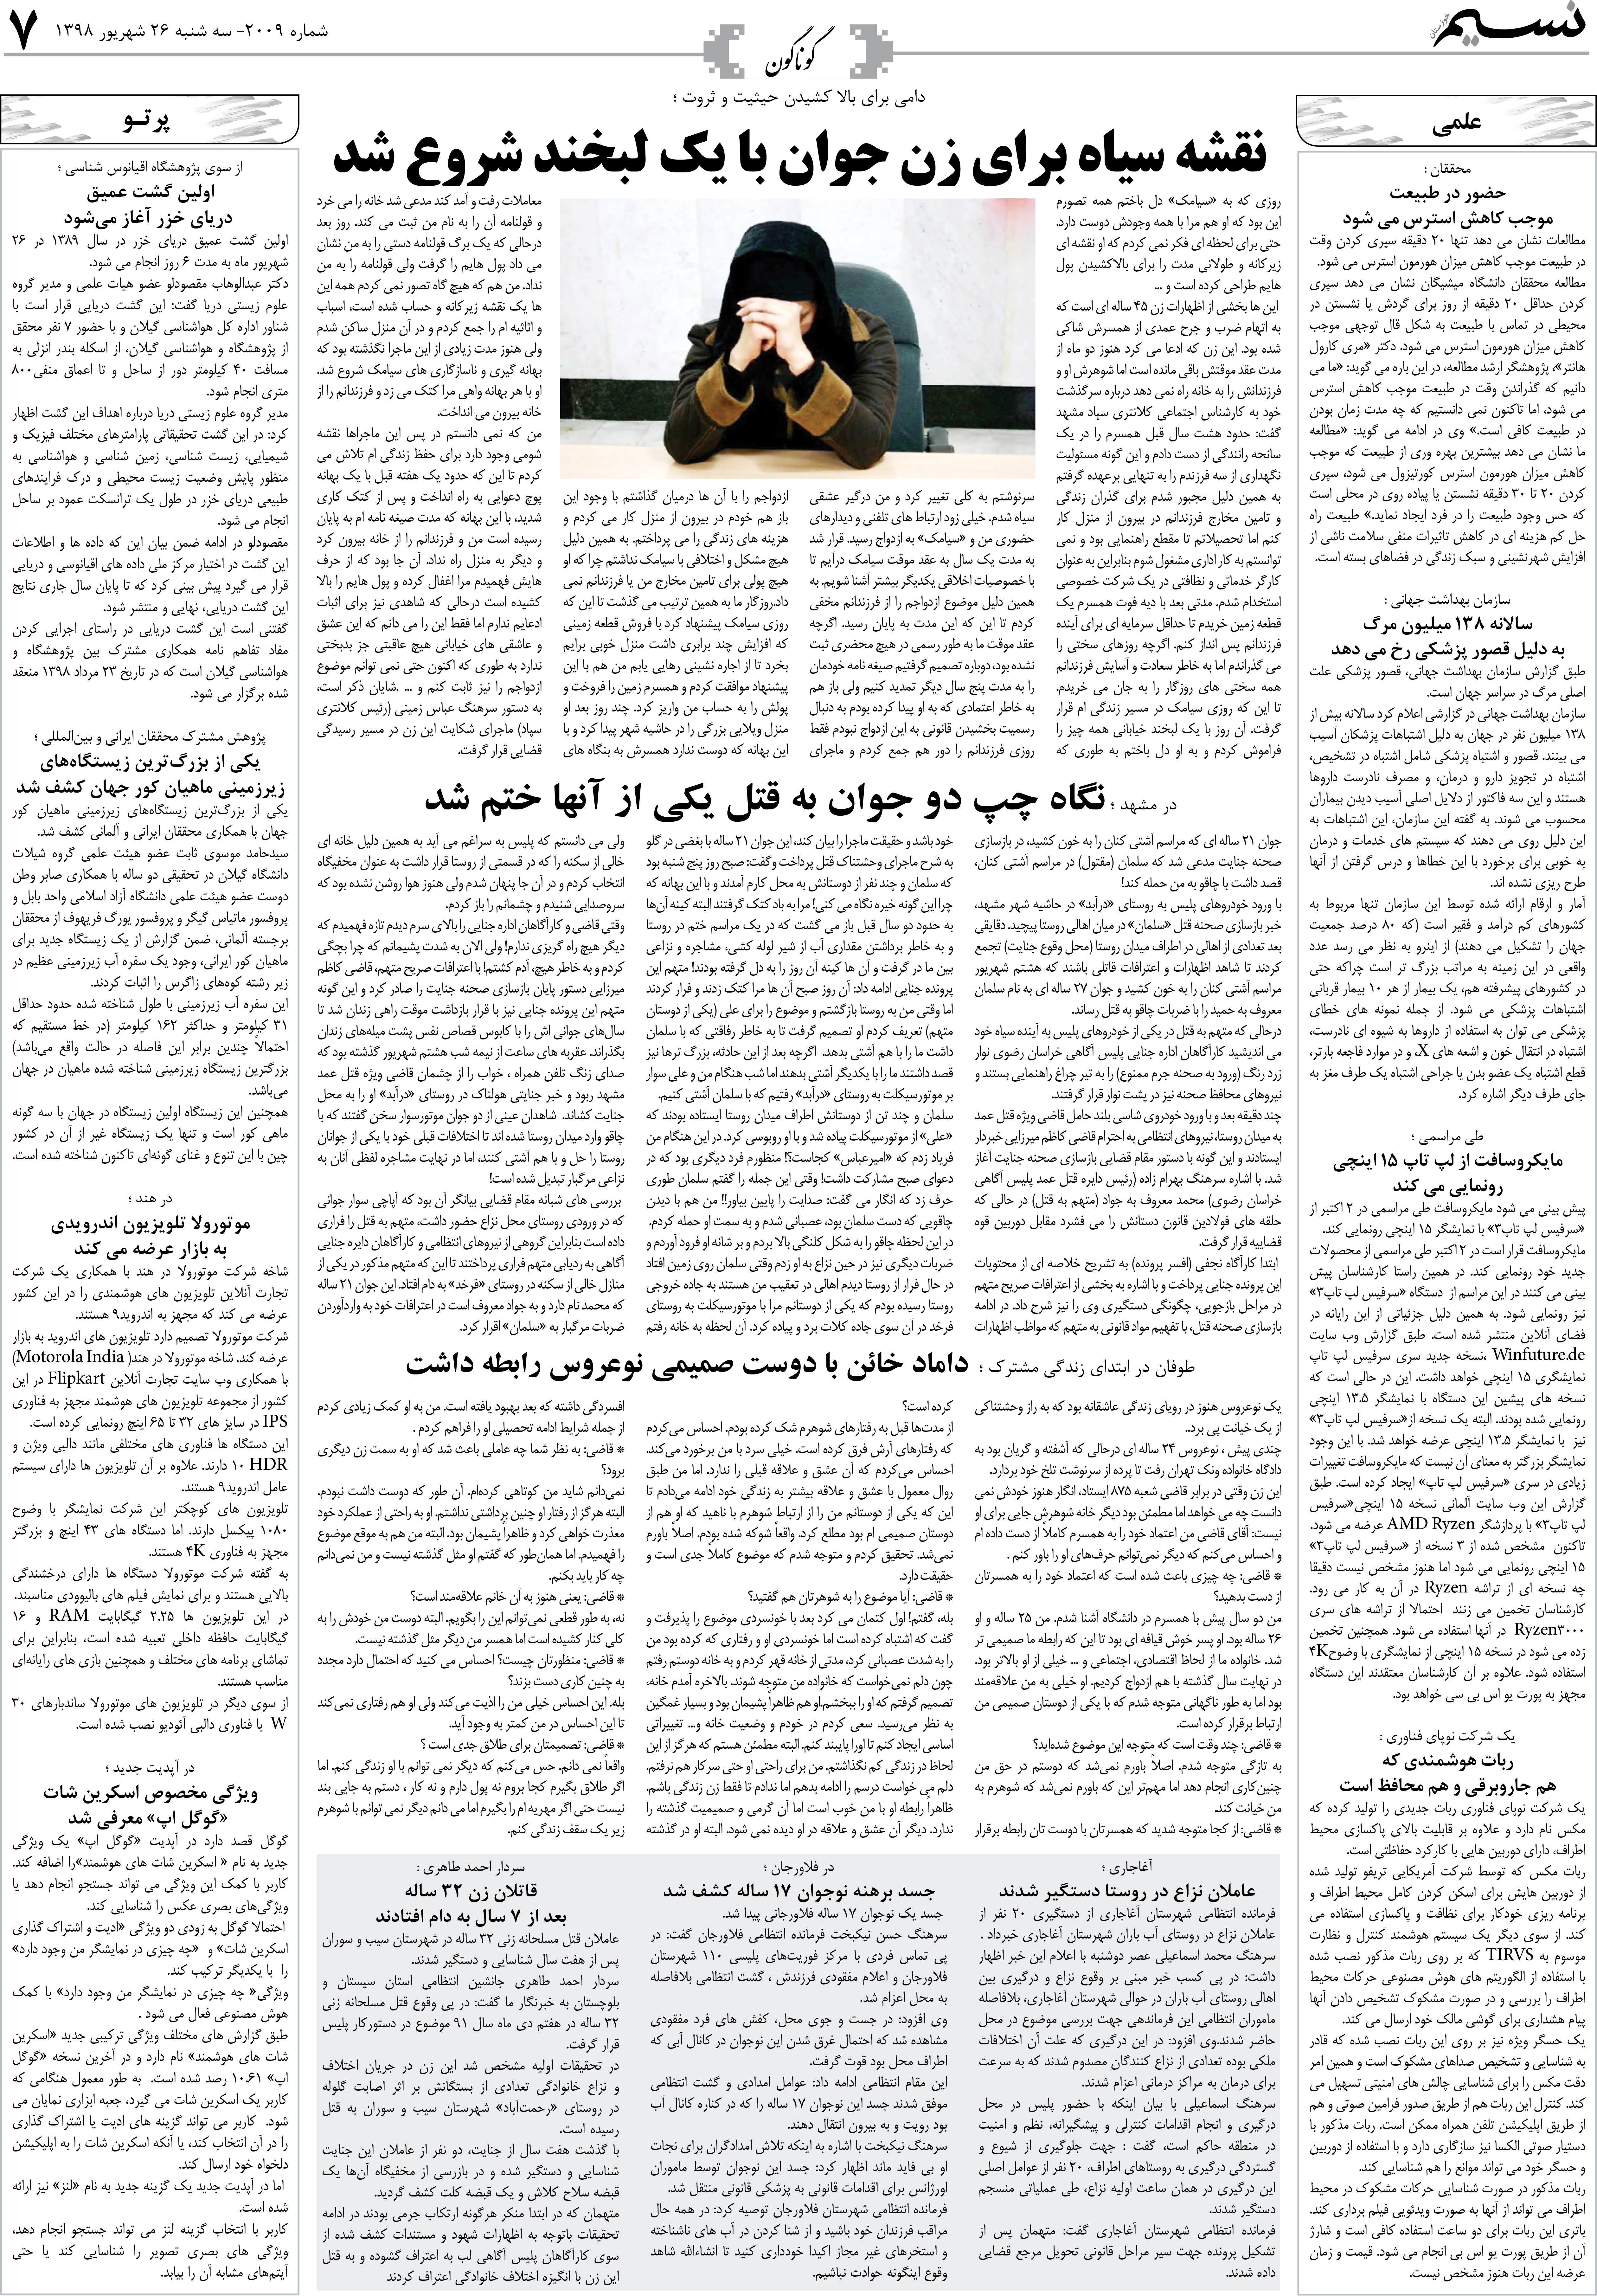 صفحه گوناگون روزنامه نسیم شماره 2009